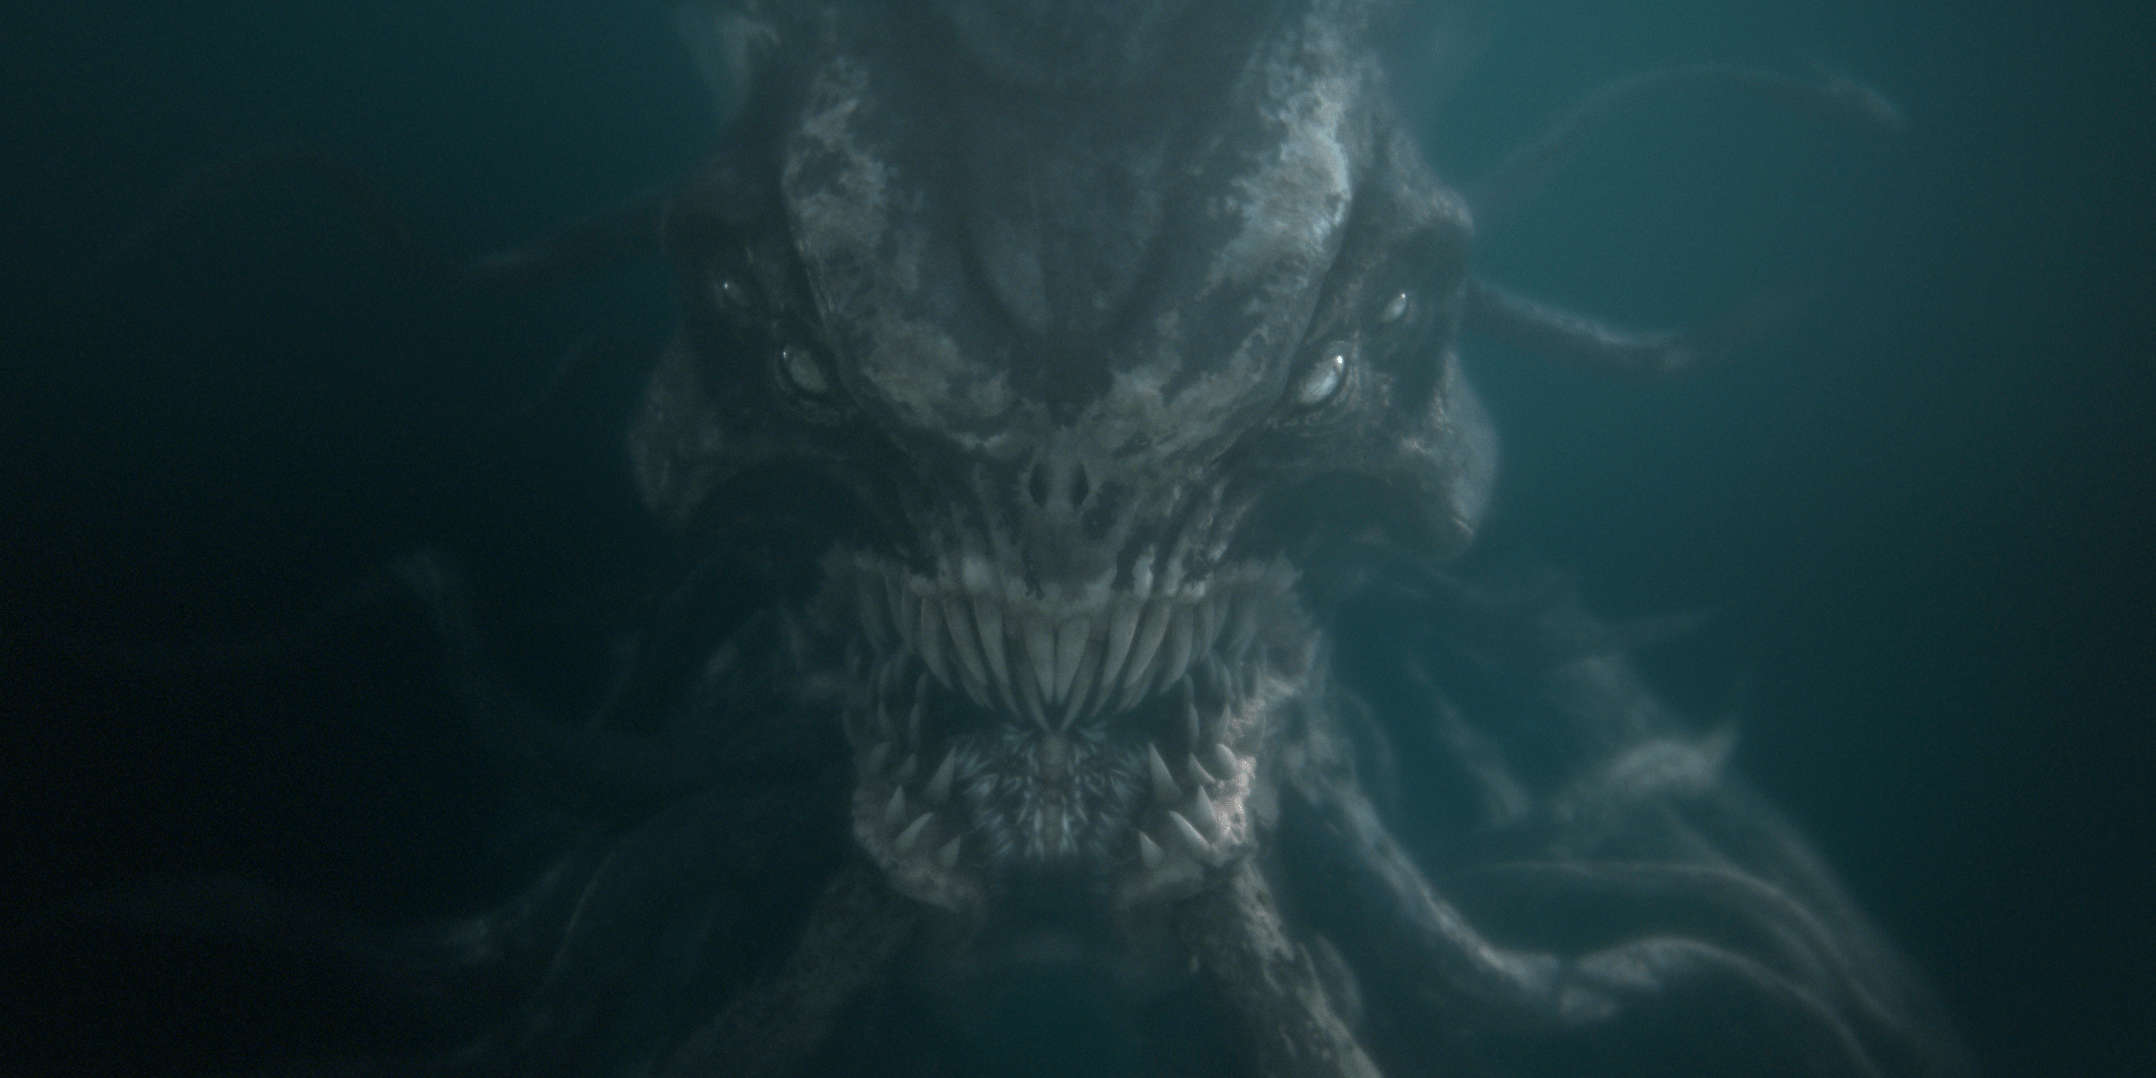 Cthulhu - Underwater (2020)